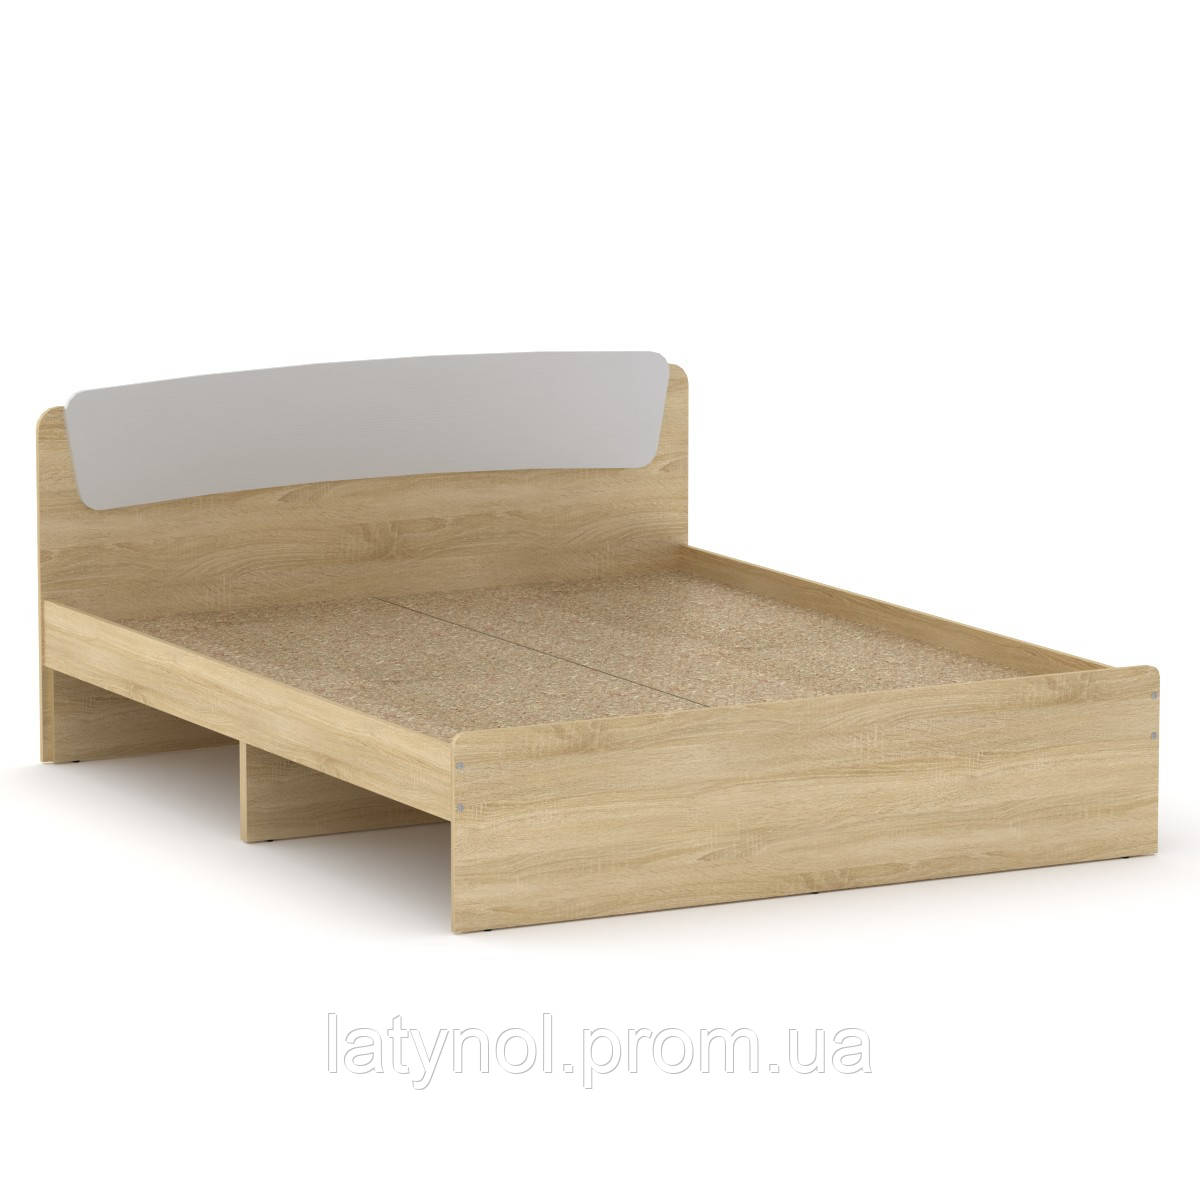 Ліжко без ящиків Класика-160 КОМПАНІТ (204.2х165.2х86 см)